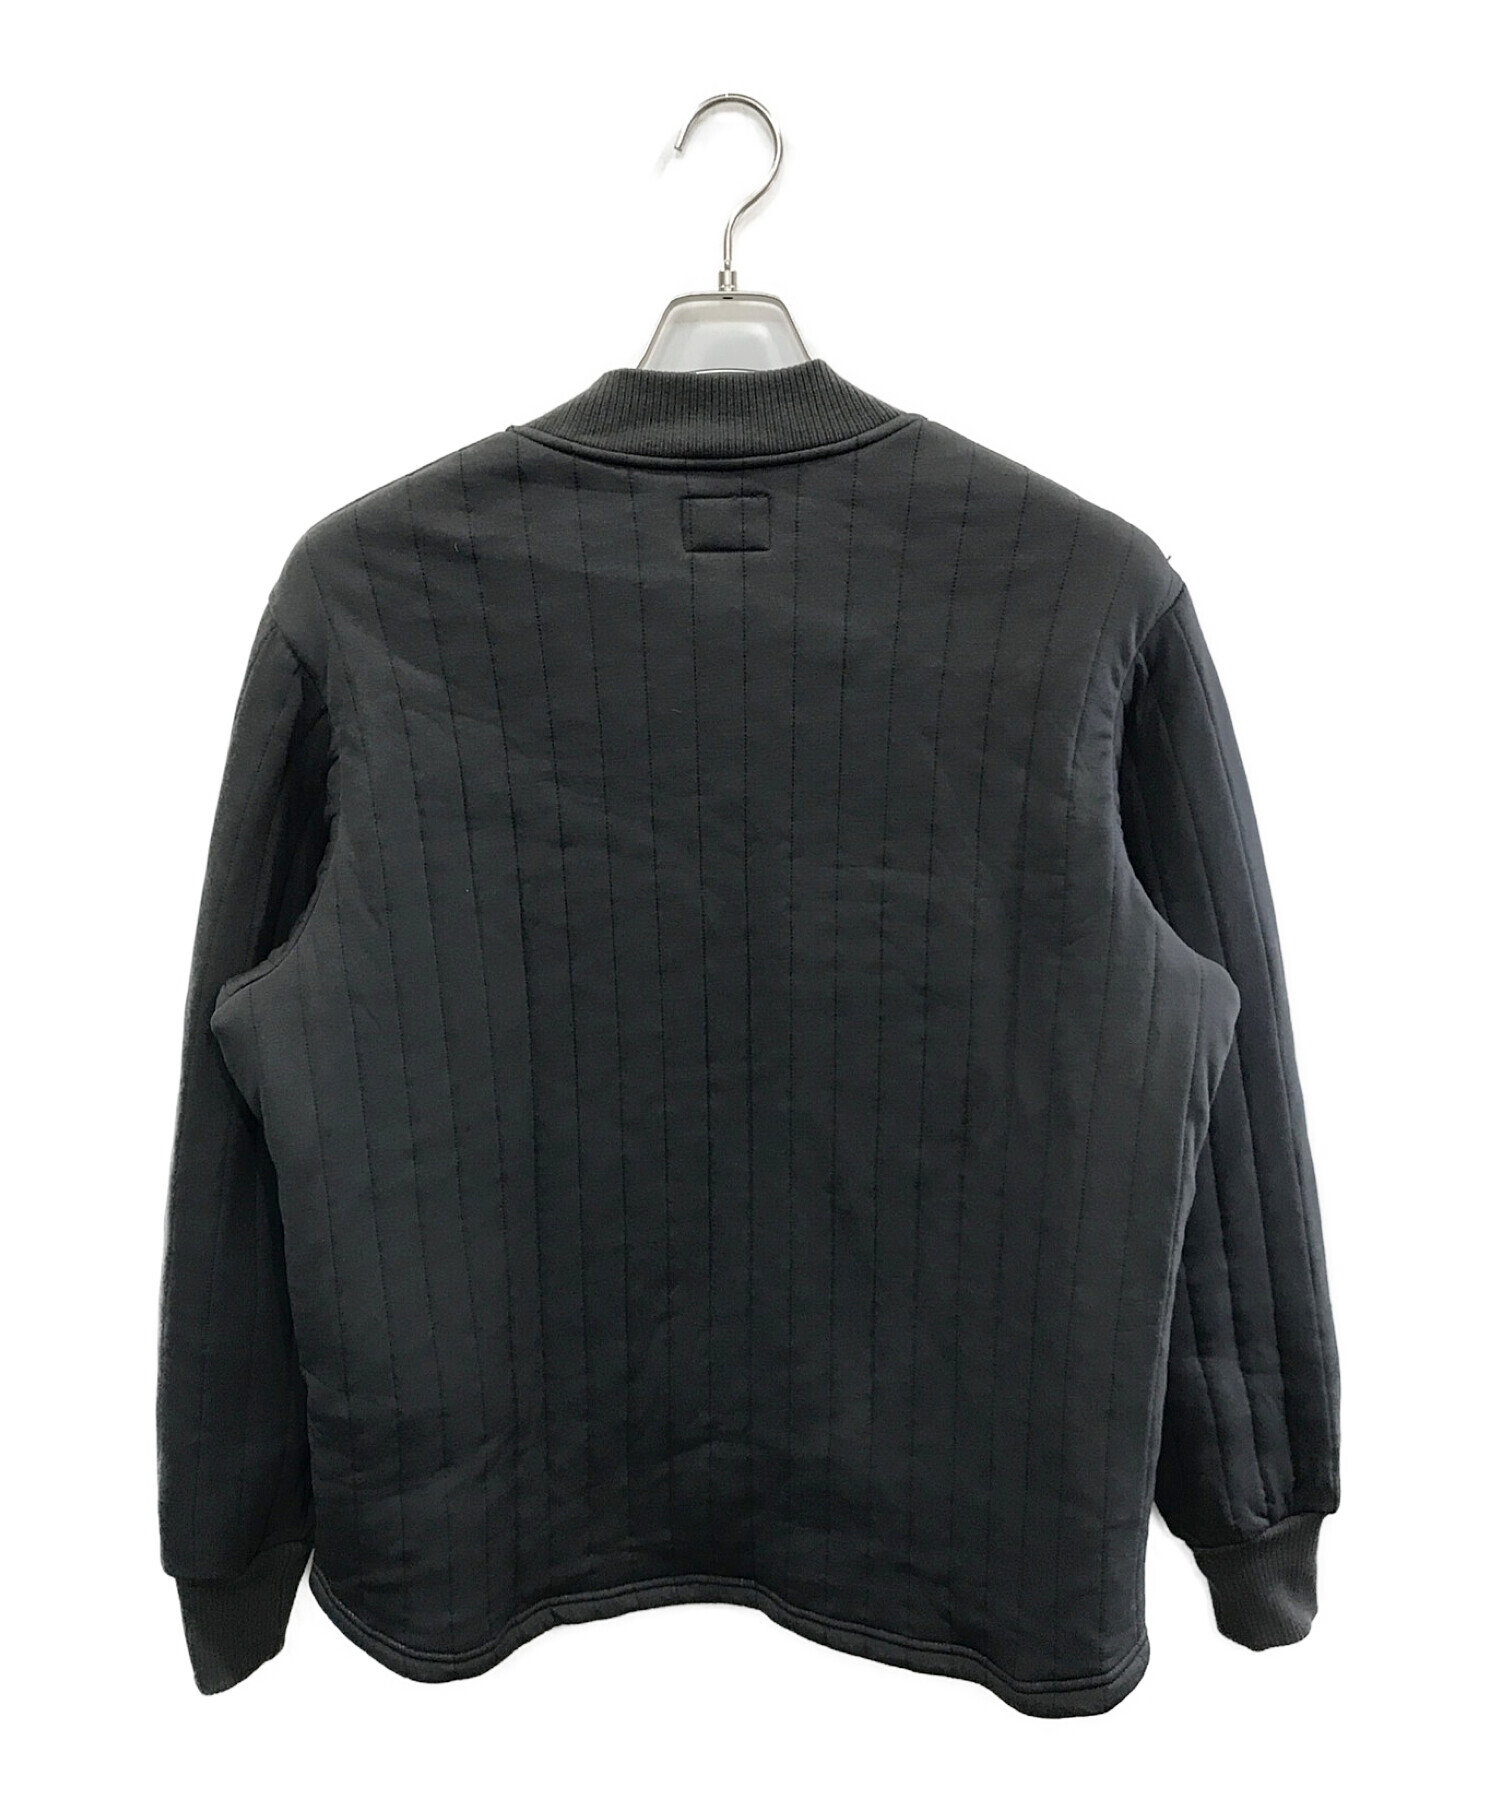 Buco (ブコ) ナイロンキルティングスウェットシャツ ブラック サイズ:L